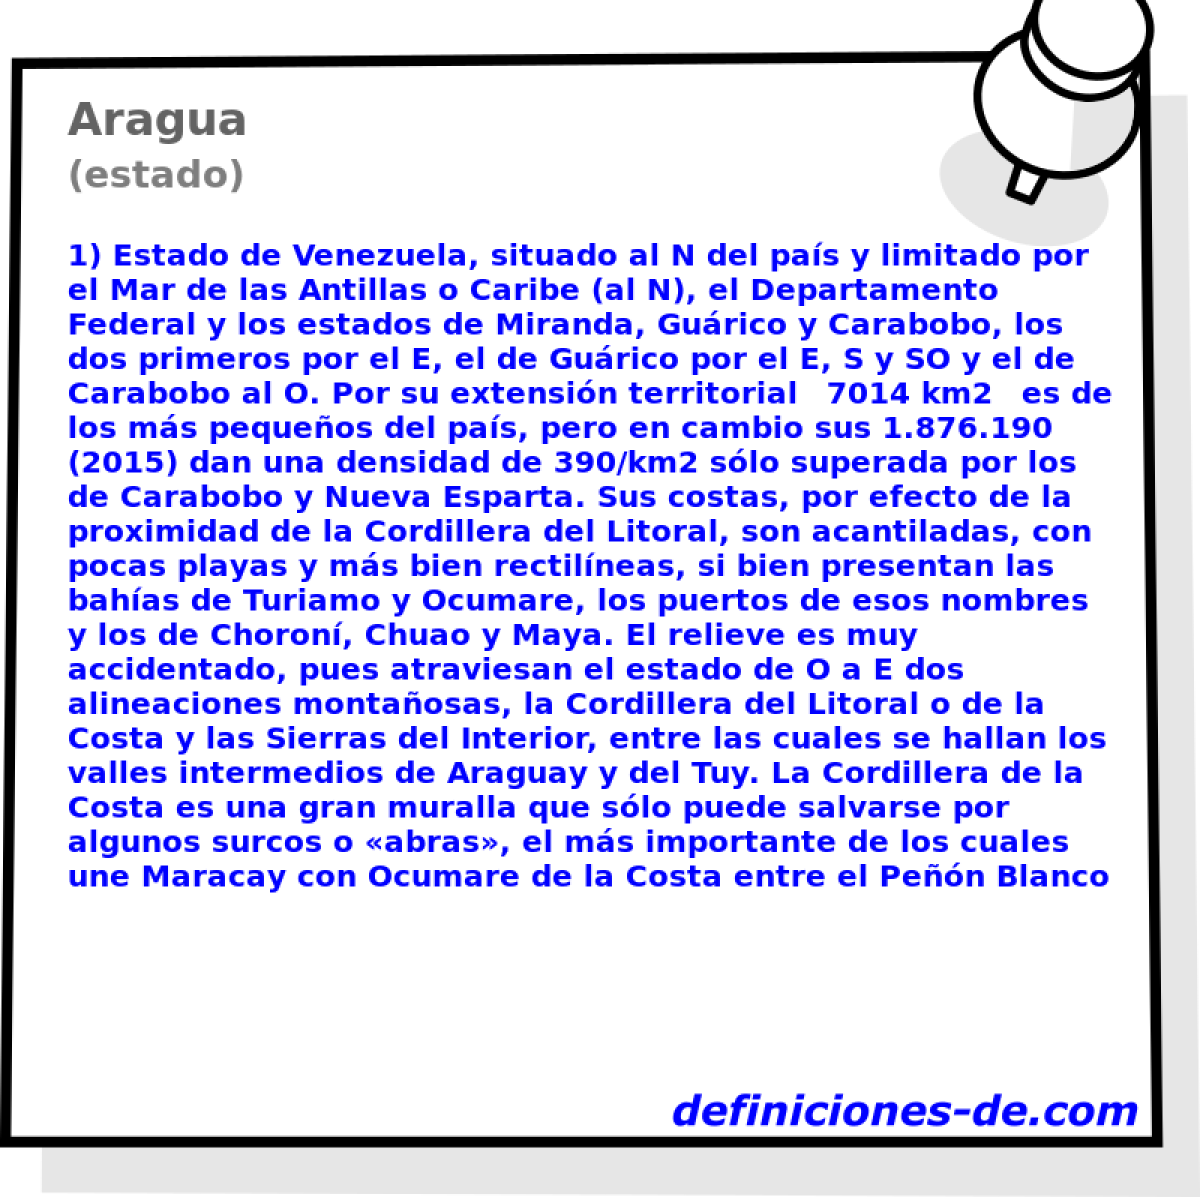 Aragua (estado)